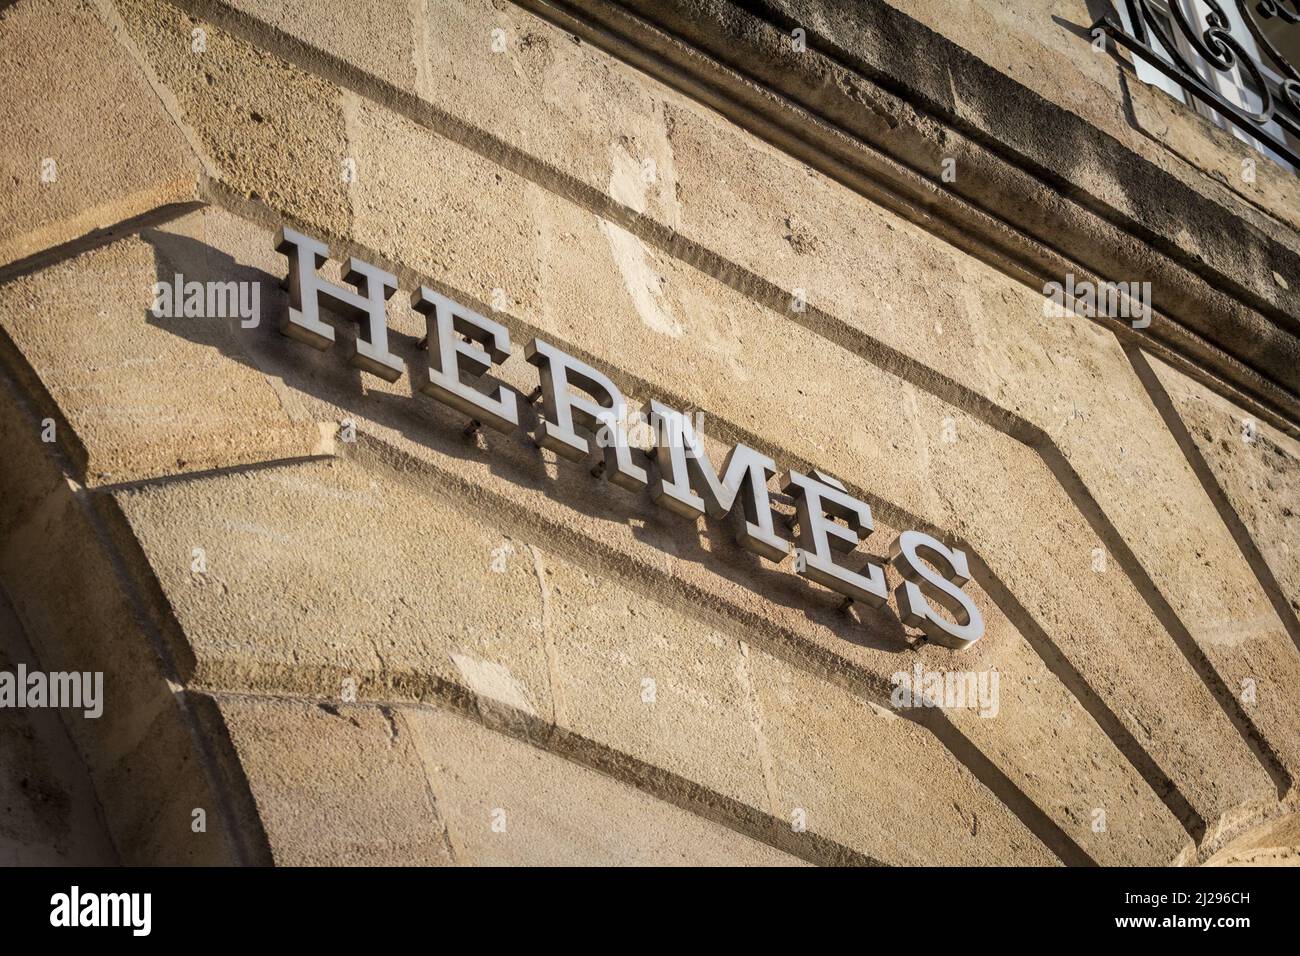 Bild eines Hermes-Zeichens in ihrer Hauptboutique für Bordeaux, Frankreich. Hermes ist ein französischer Luxusgüterhersteller, der 1837 gegründet wurde. I Stockfoto